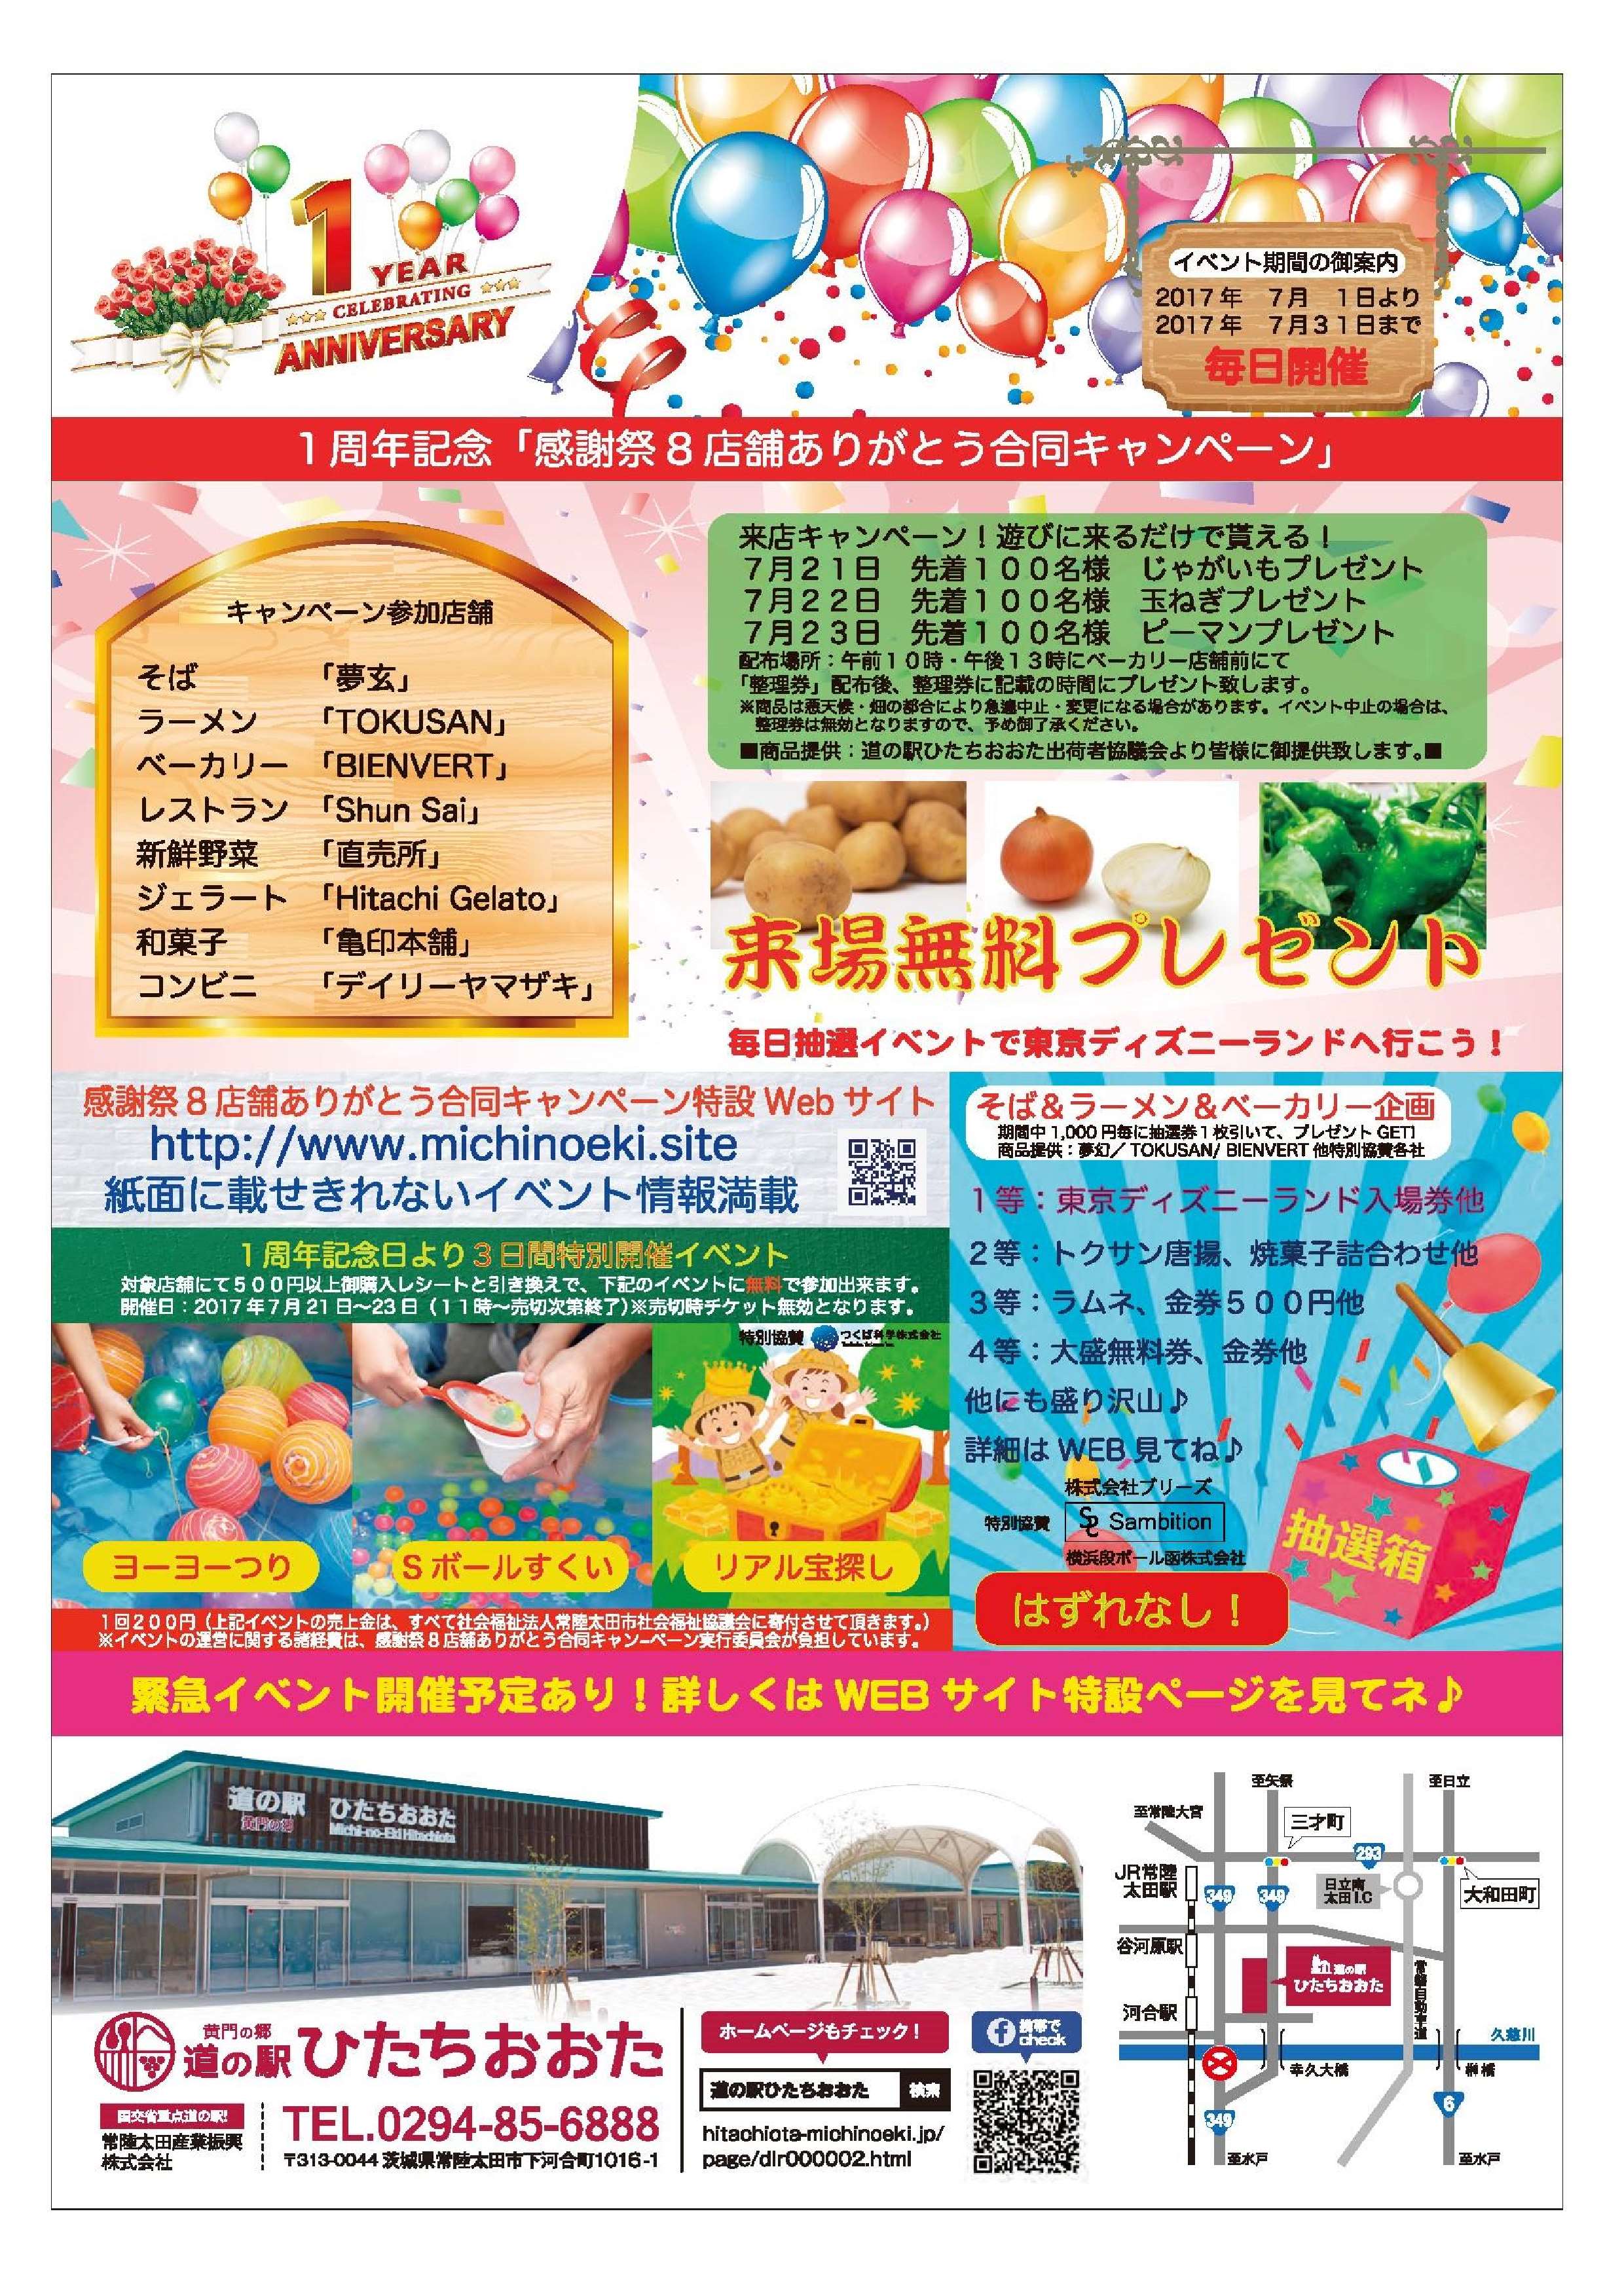 道の駅 ひたちおおた オープン1周年記念イベントのお知らせです 関東 道の駅 公式ホームページ